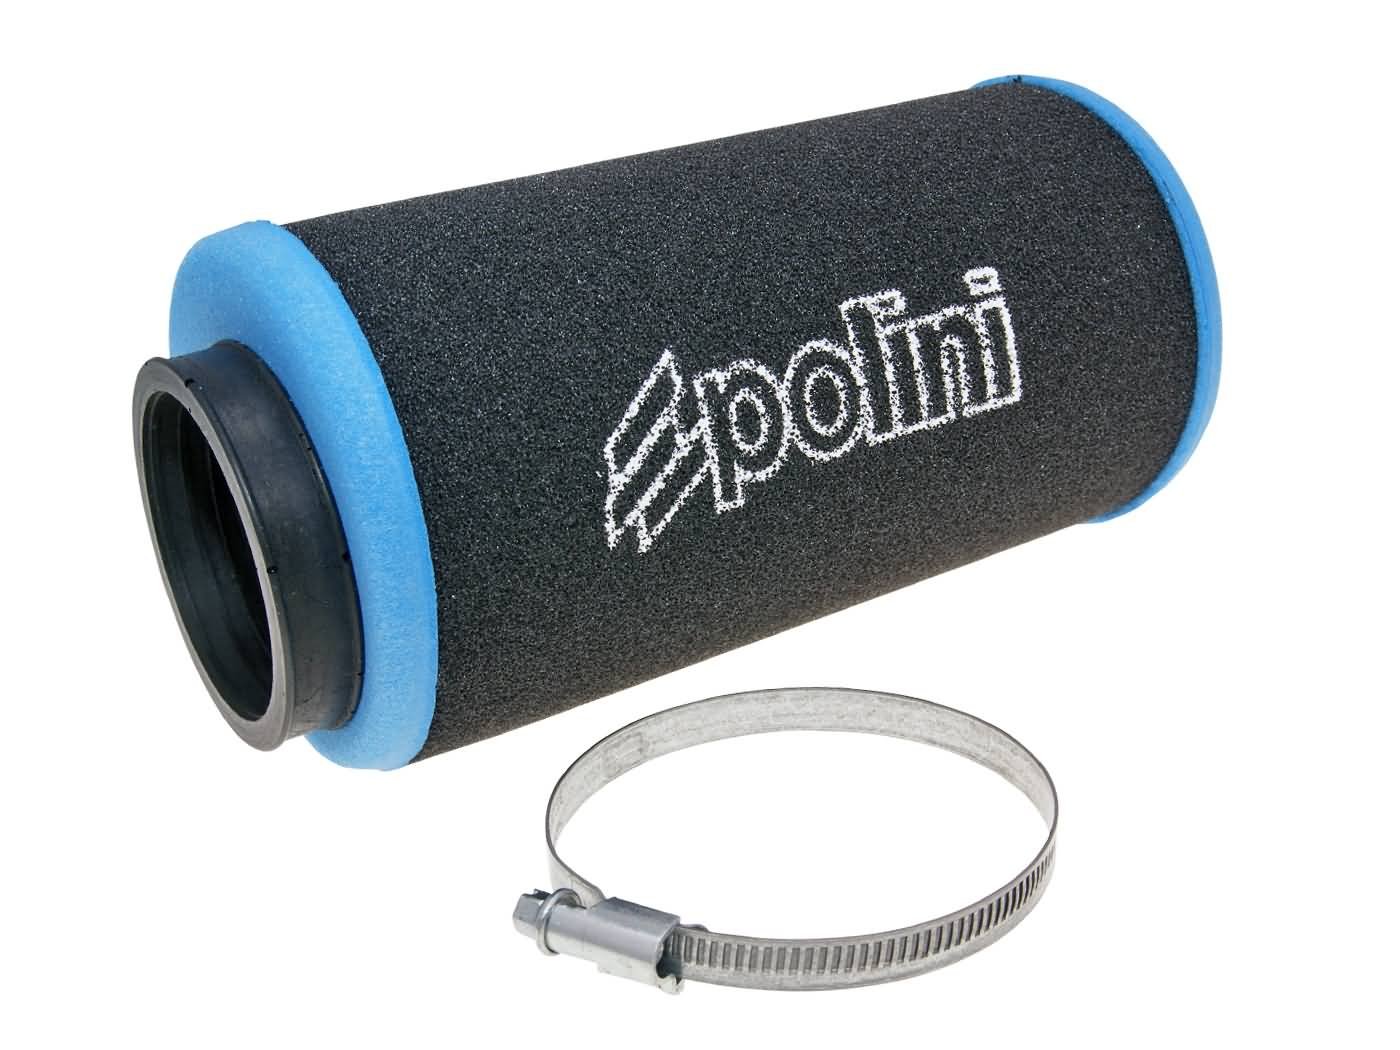 Luftfilter Polini Evolution 60mm gerade schwarz-blau von POLINI